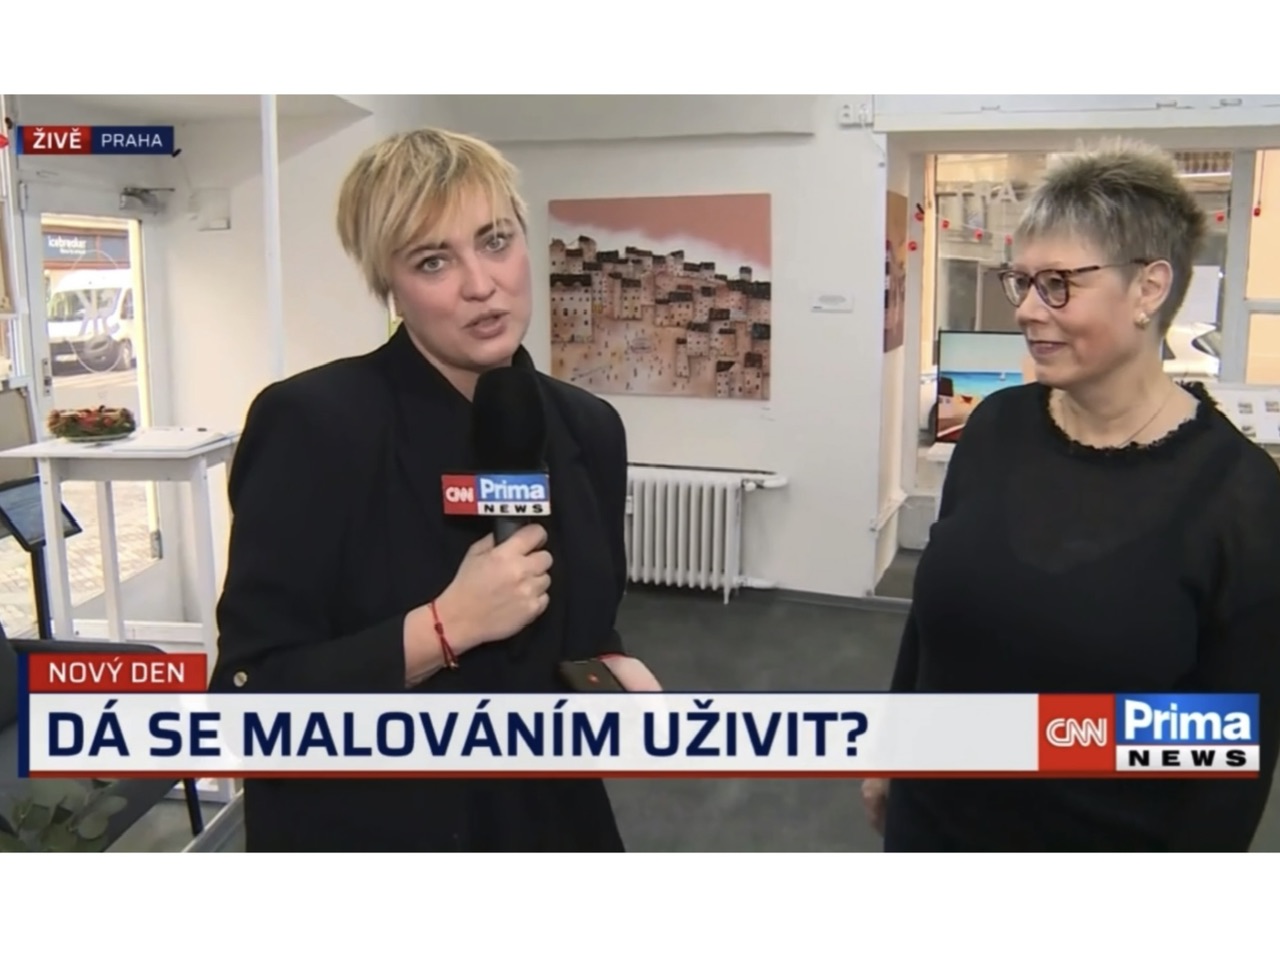 Rozhovor v živém vysílání CNN Prima NEWS z Galerie Slávky Krátké